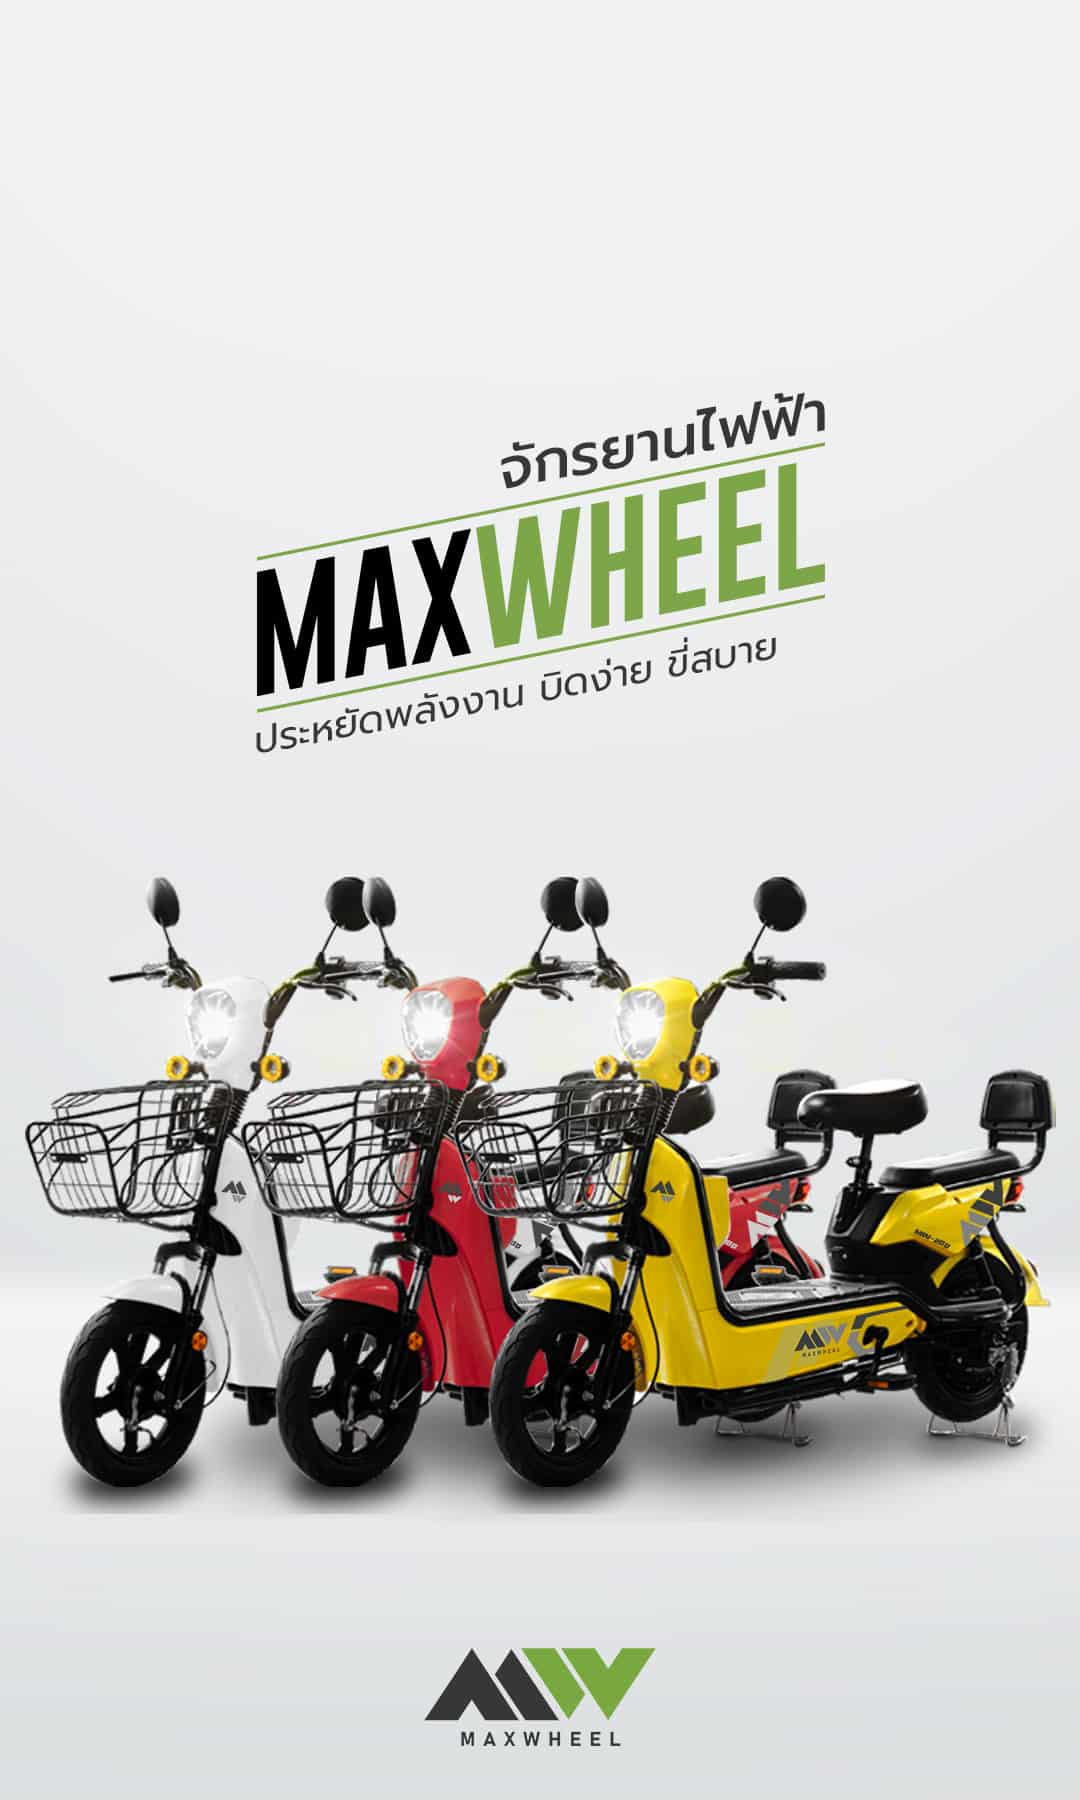 MAXWHEEL จำหน่ายจักรยานไฟฟ้า มอเตอร์ไซค์ไฟฟ้า